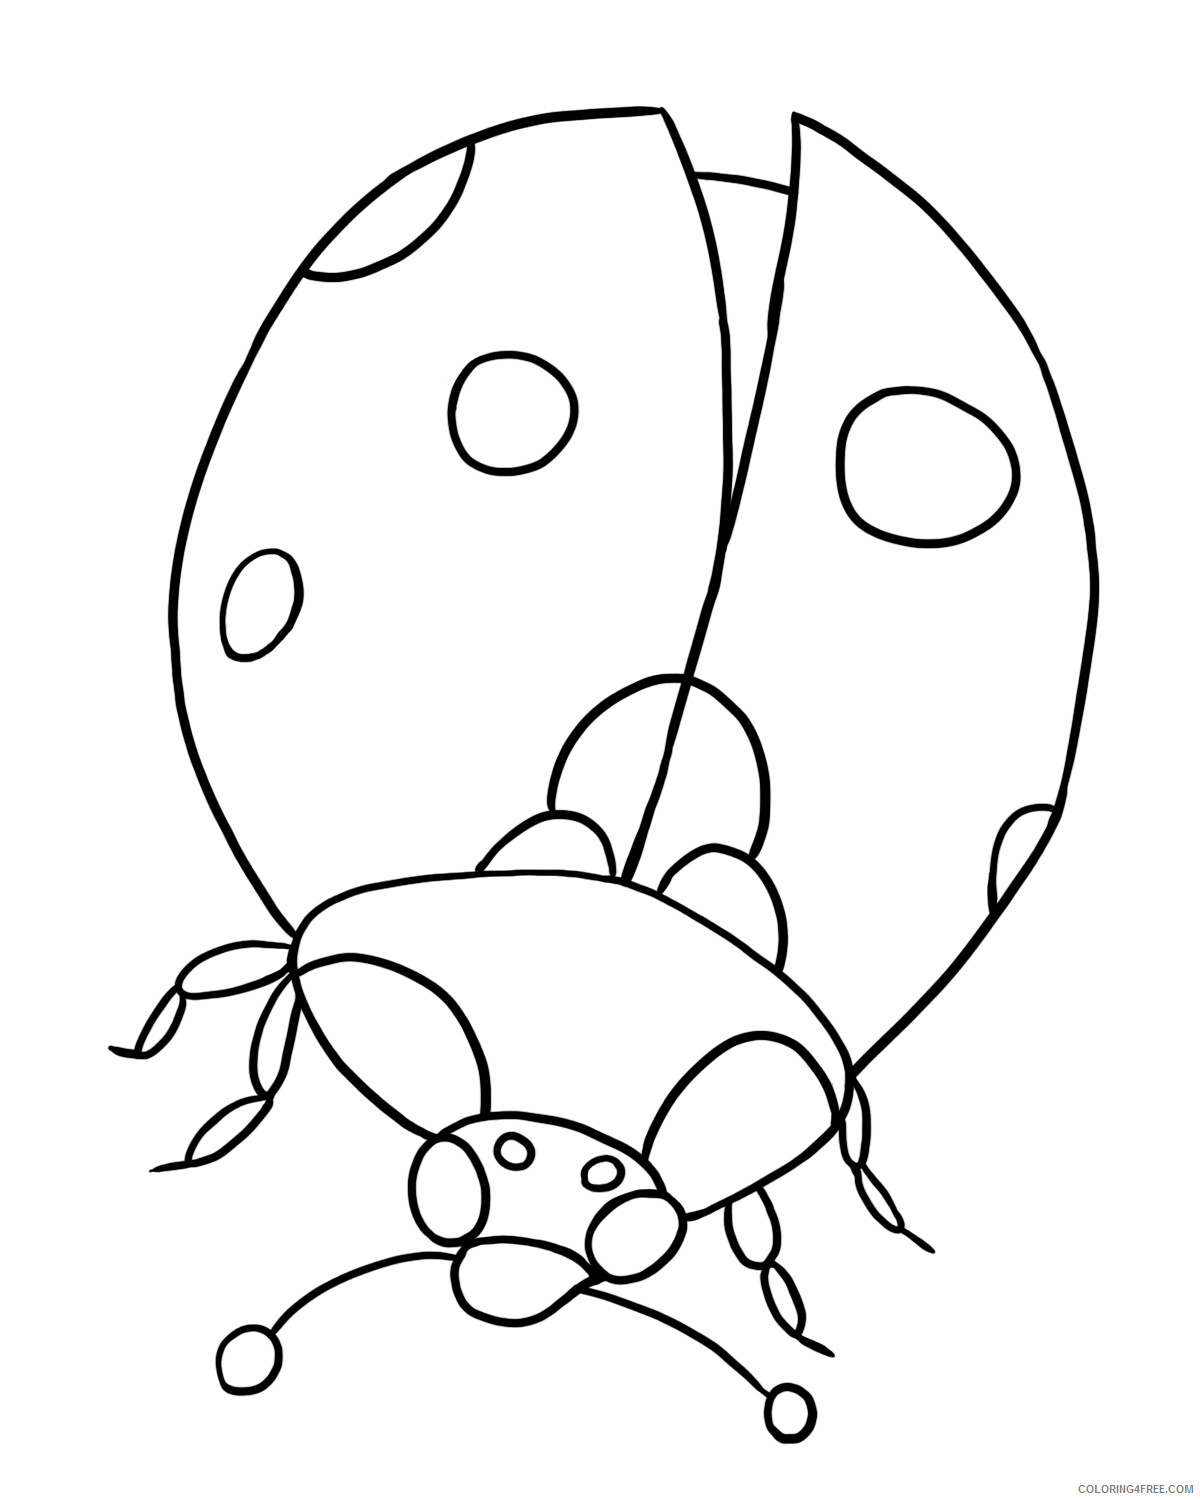 Ladybug Coloring Pages Animal Printable Sheets Ladybug 2 2021 3073 Coloring4free